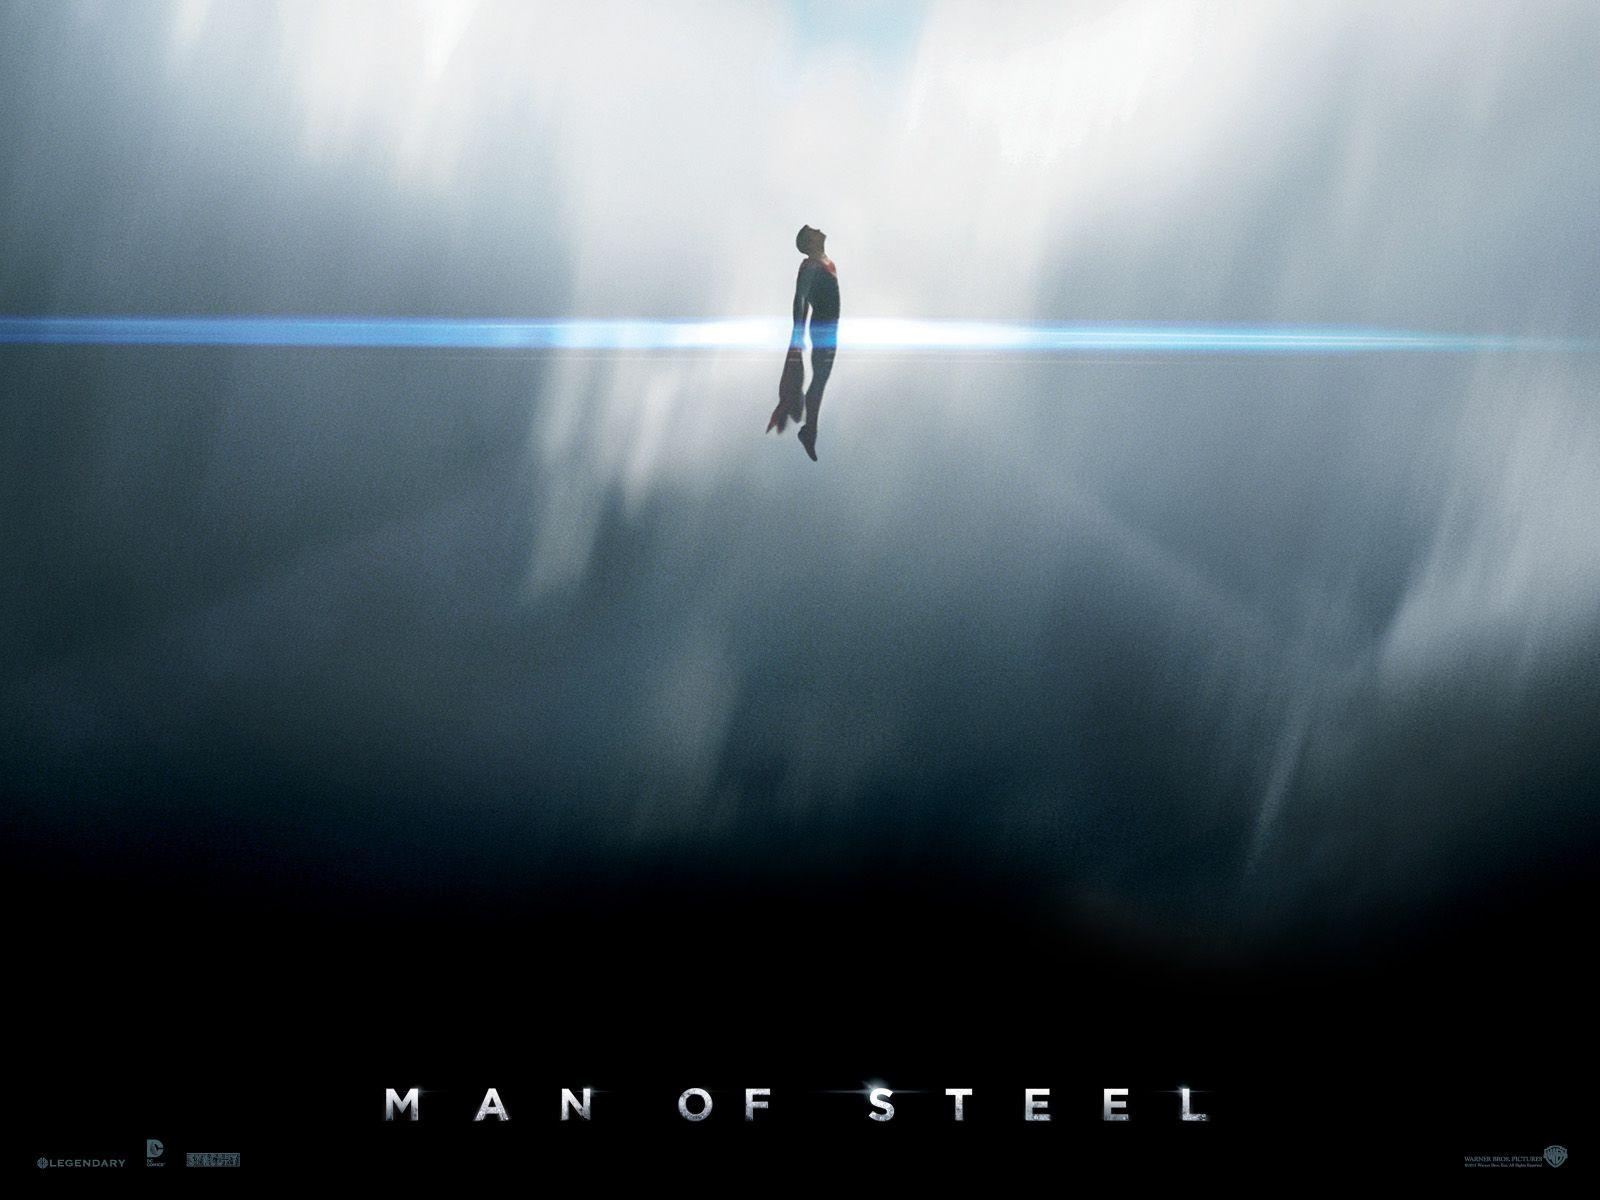 Man of Steel 2013: Man of Steel Wallpaper HD. man of steel